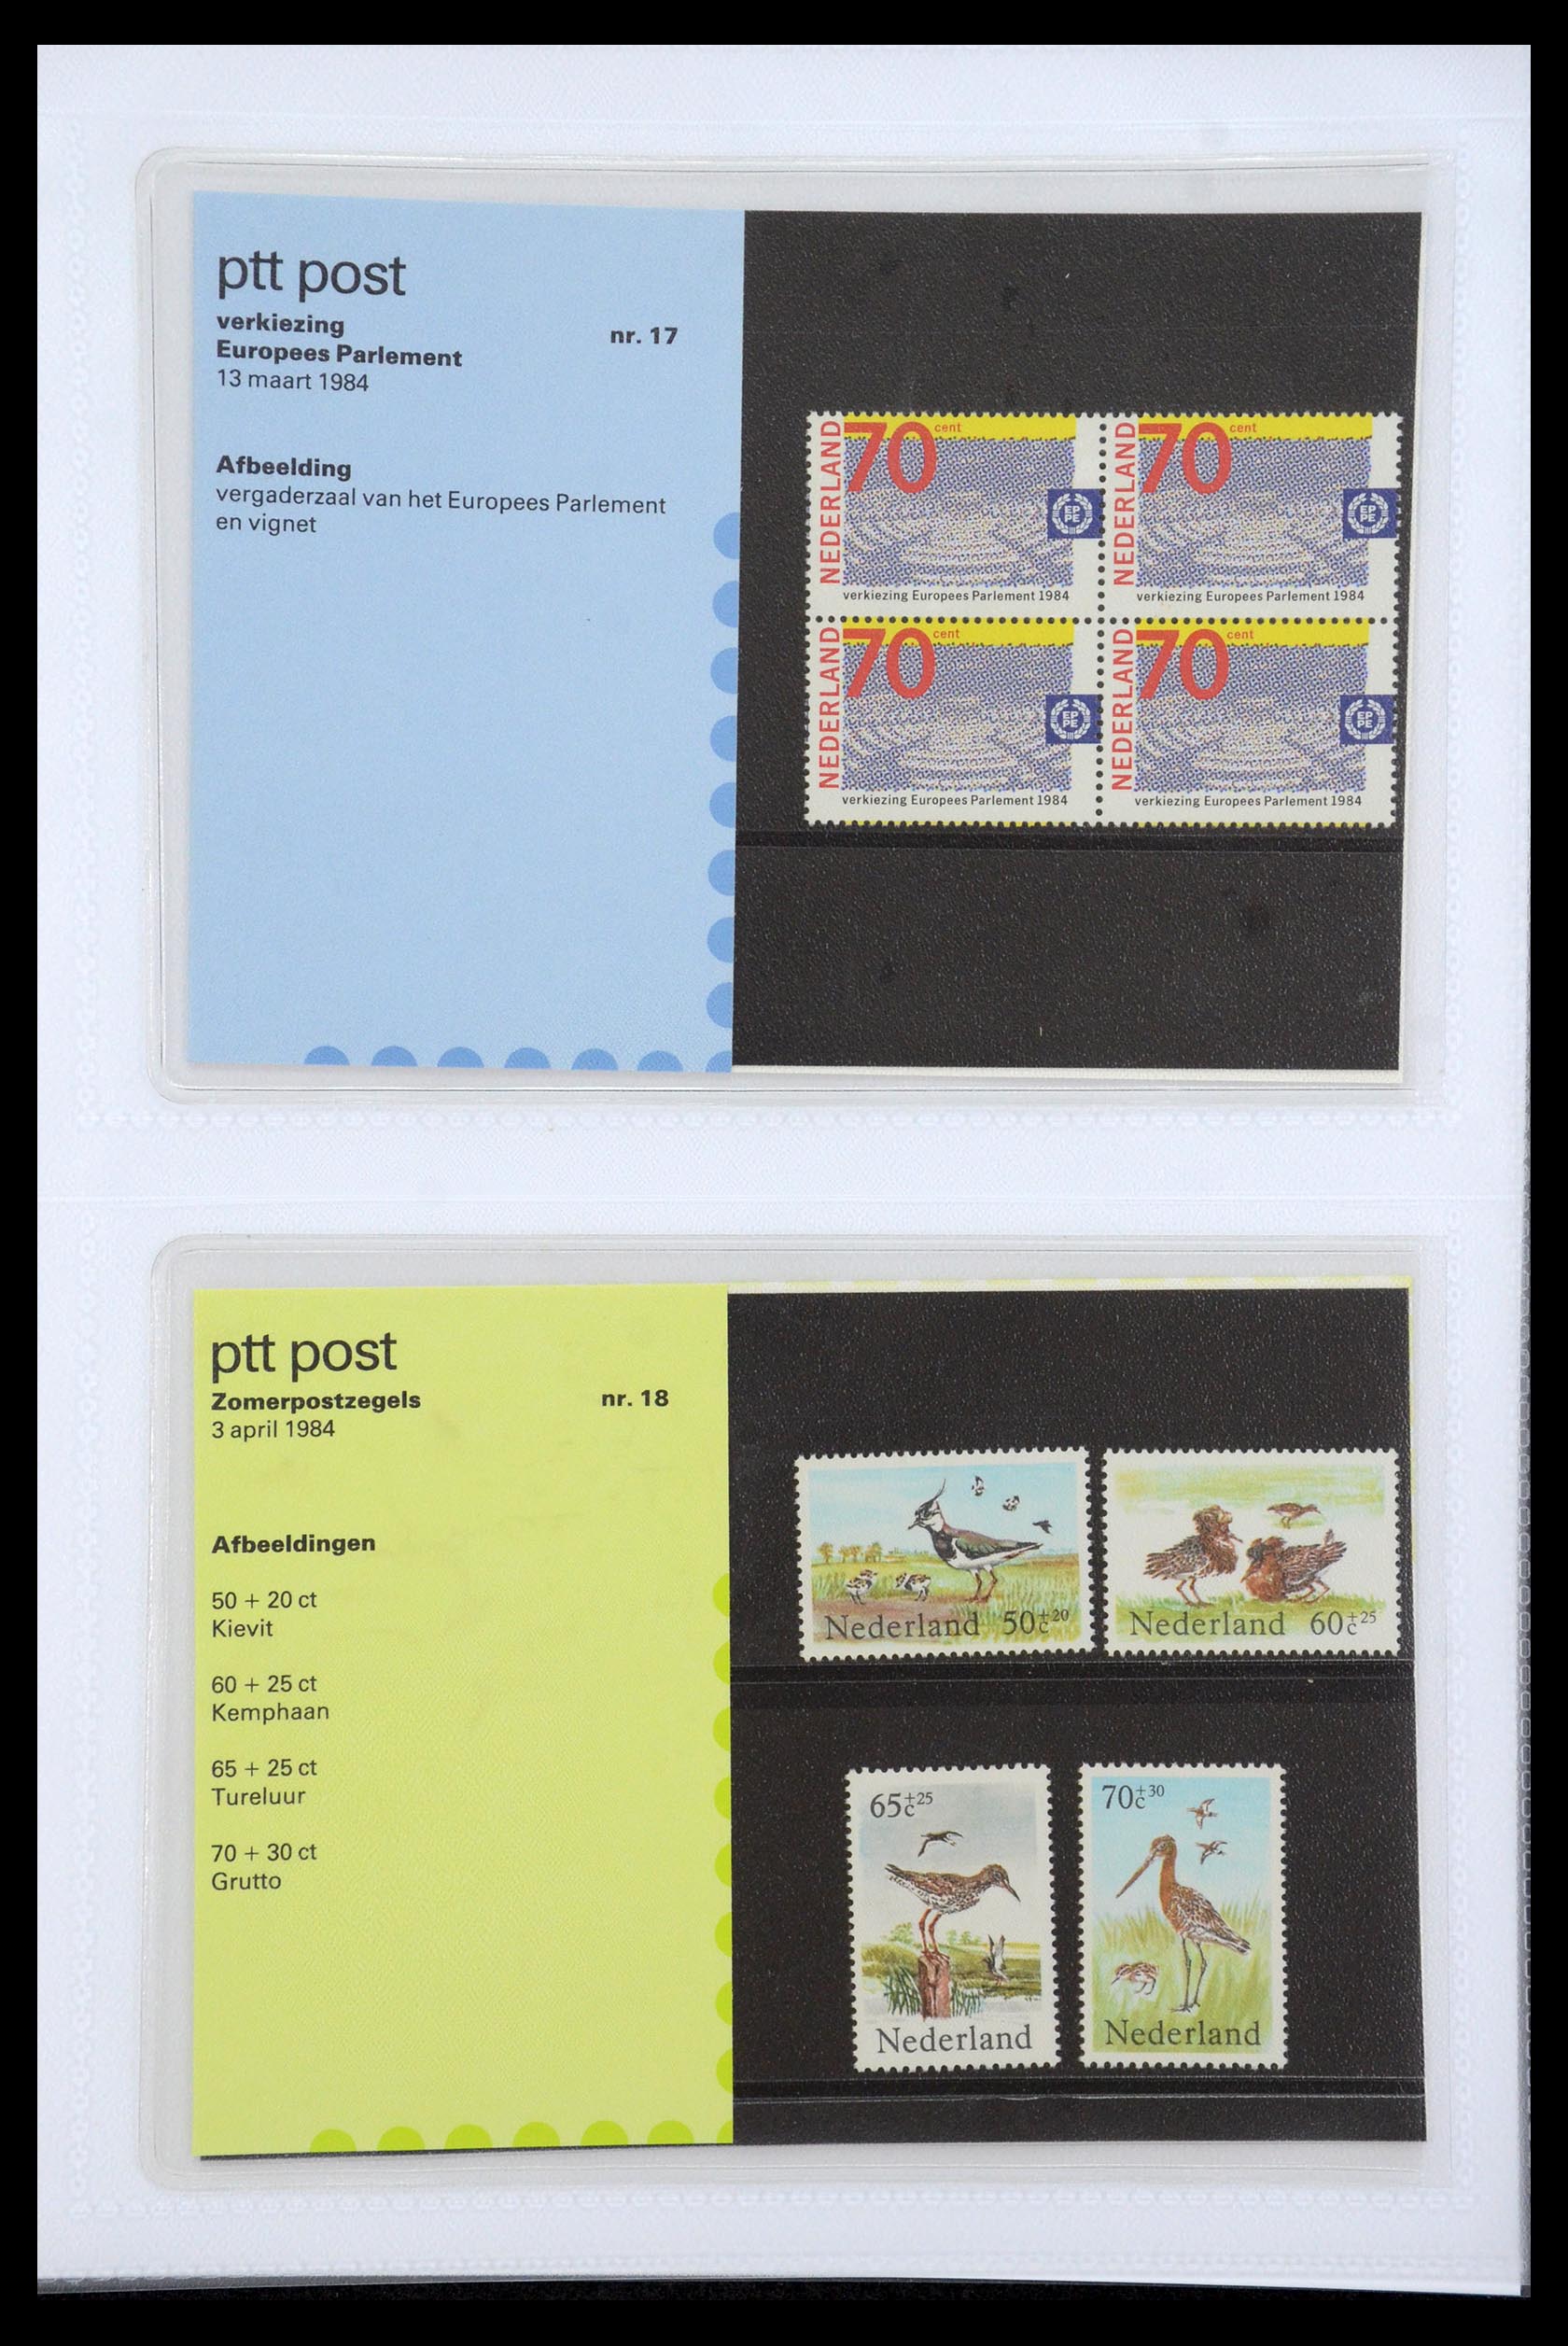 35947 009 - Stamp Collection 35947 Netherlands PTT presentation packs 1982-2019!